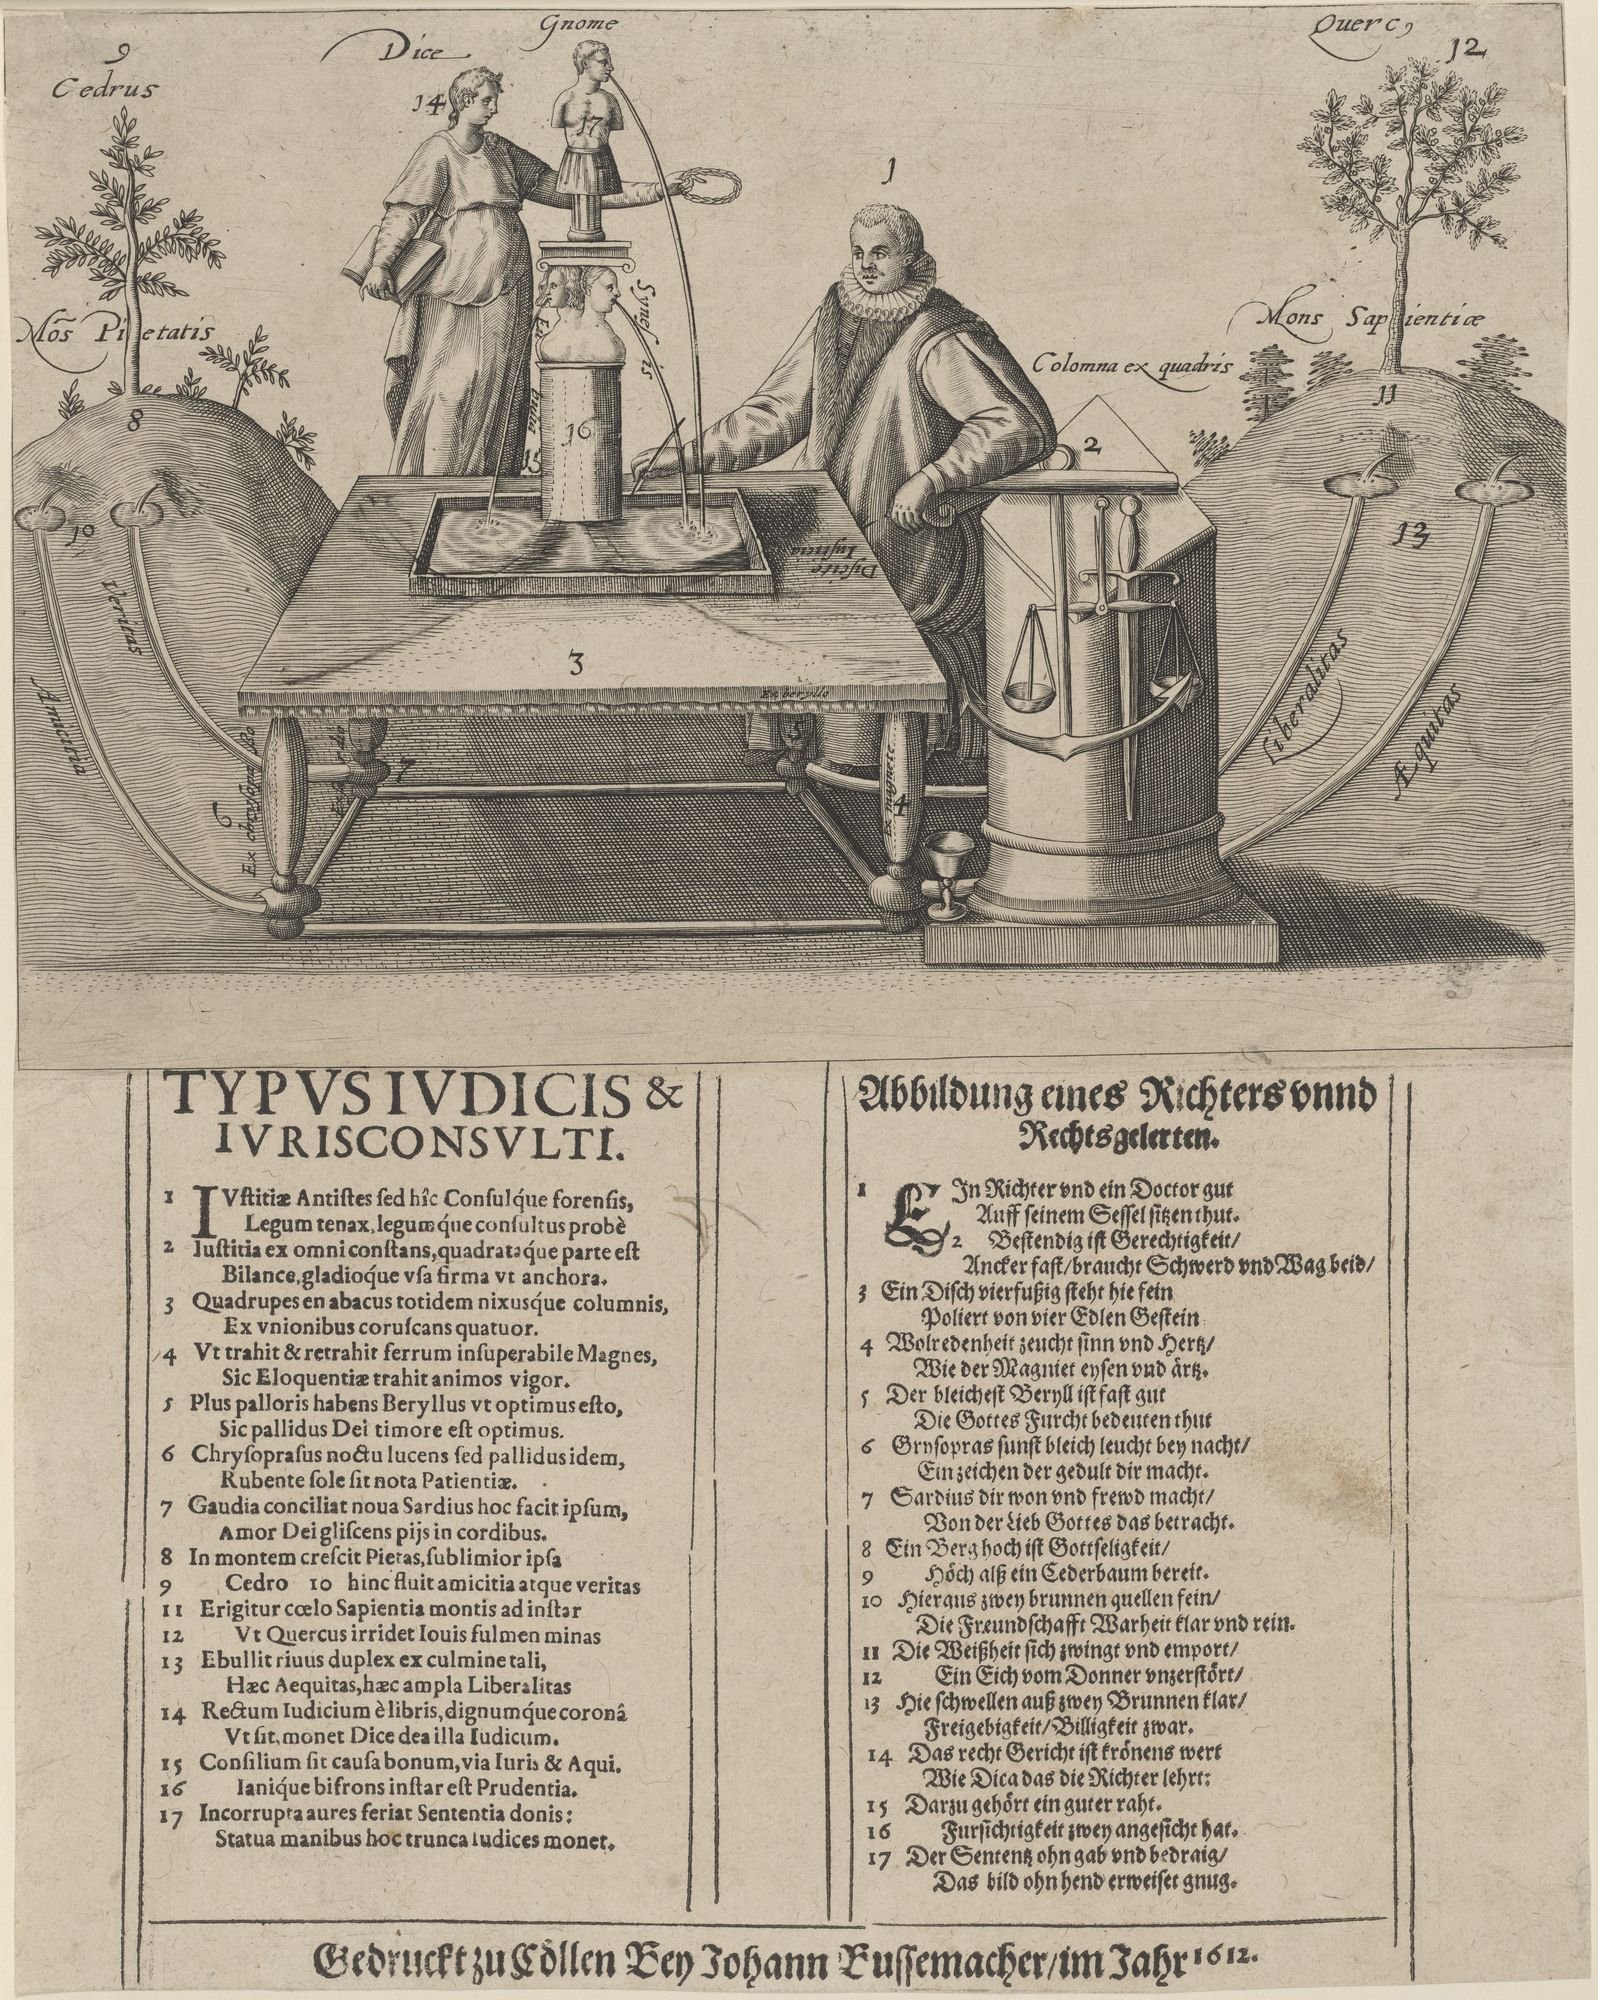 TYPUS IUDICIS &/ IURISCONSULTI. Abbildung eines Richters unnd Rechtsgelerten. (Kulturstiftung Sachsen-Anhalt Public Domain Mark)